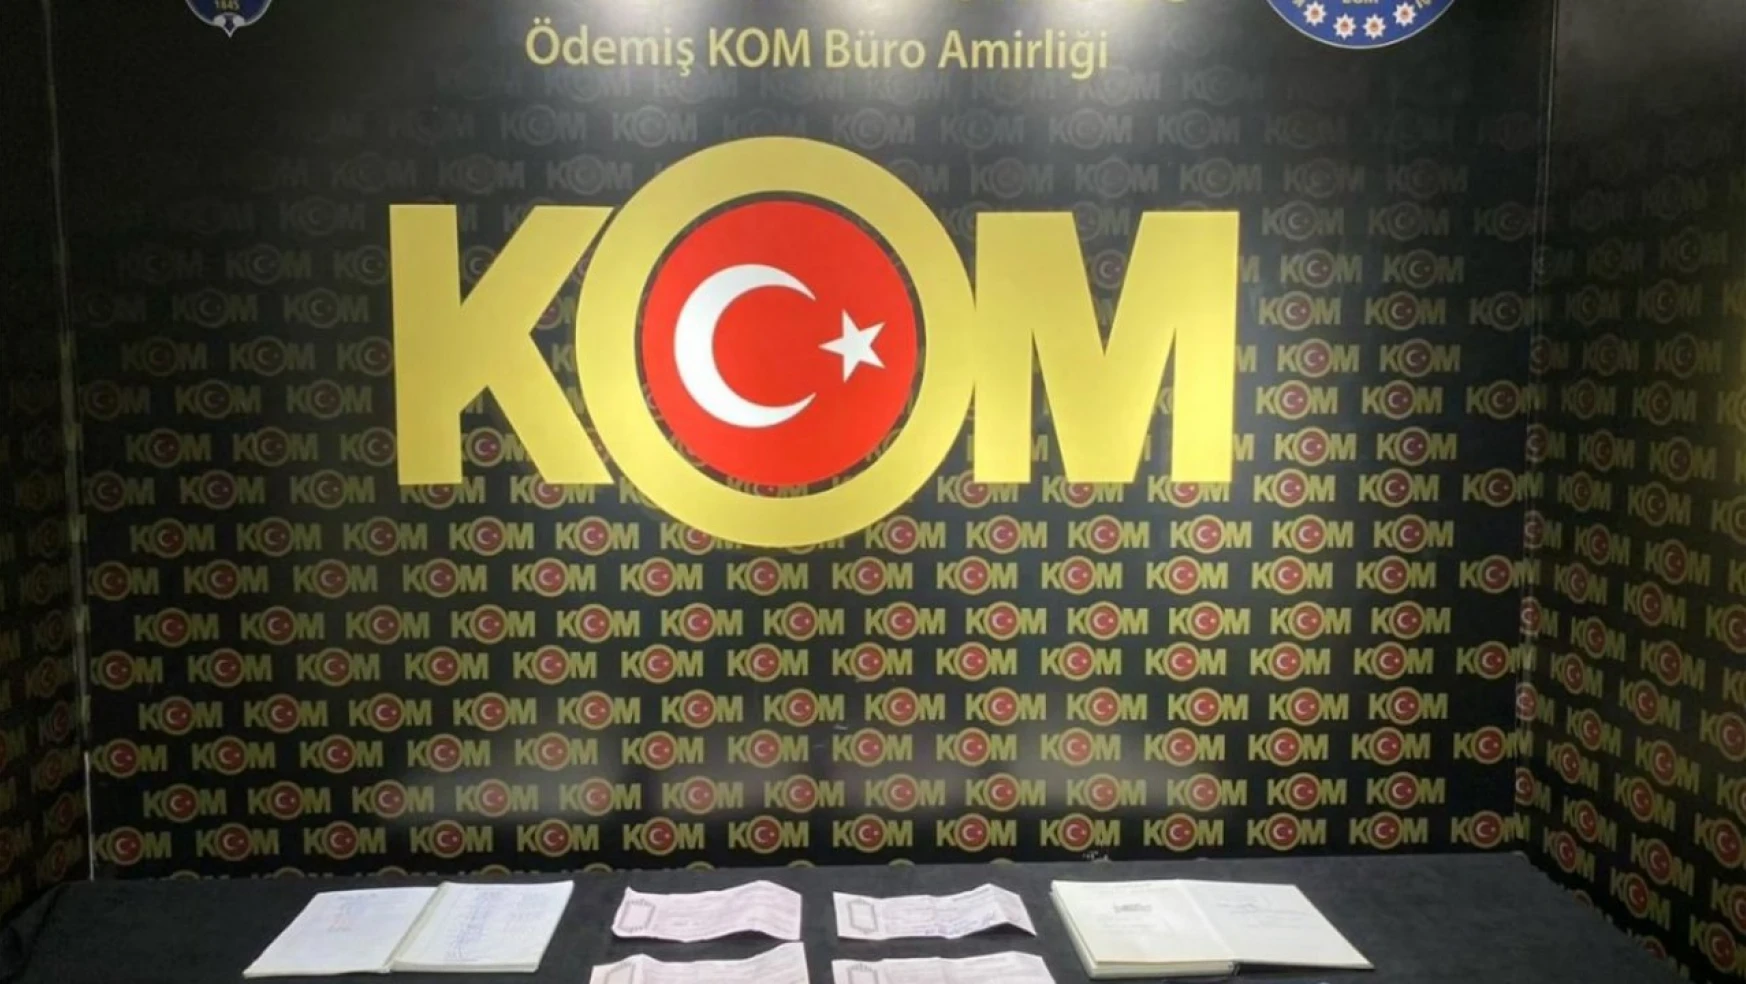 İzmir'de tefecilik yapan 3 kişiye gözaltı